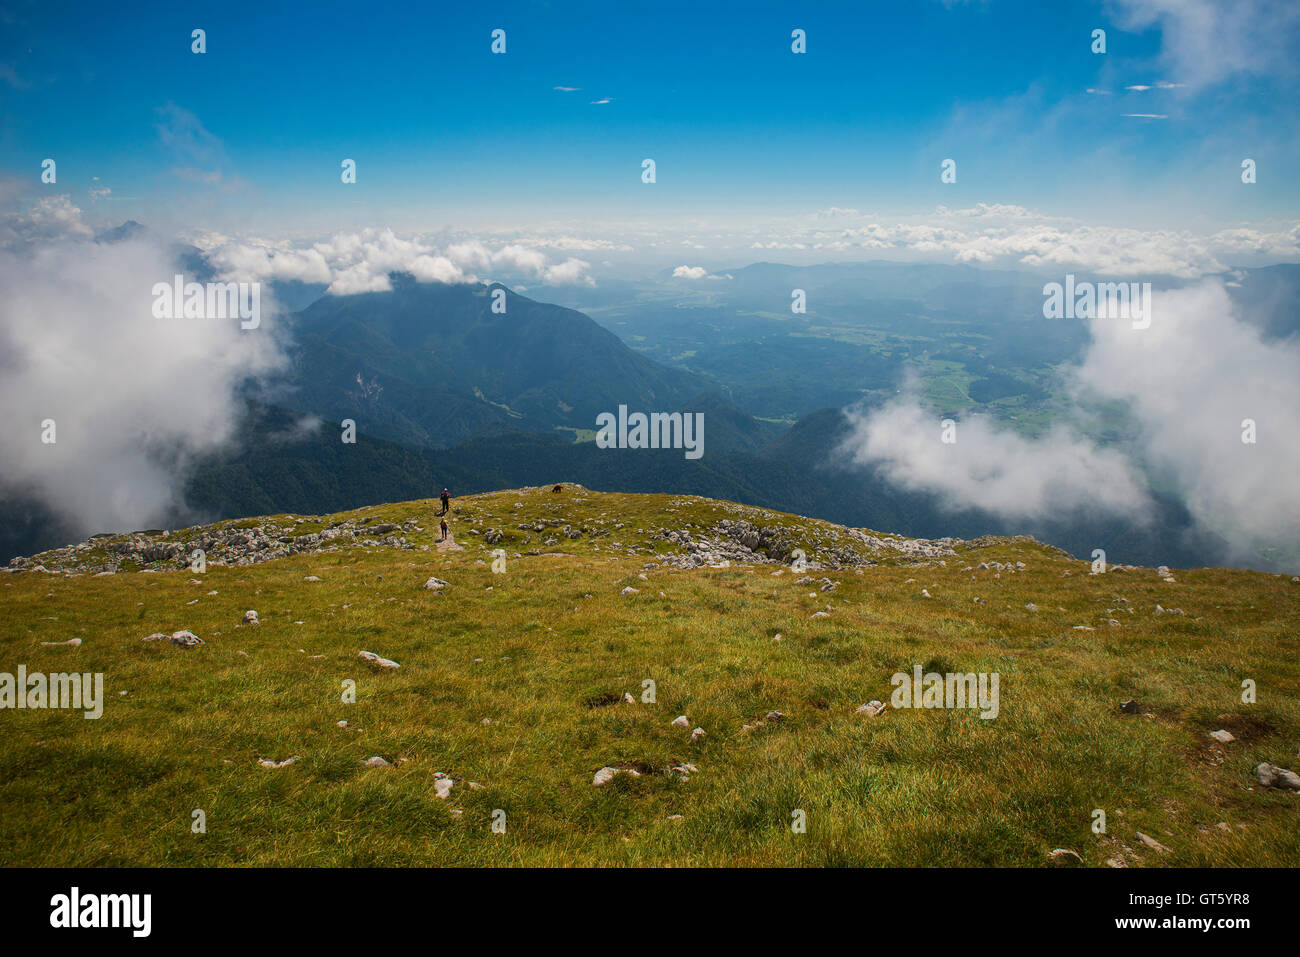 Stol mountain, Karavanke, Slovenia Stock Photo